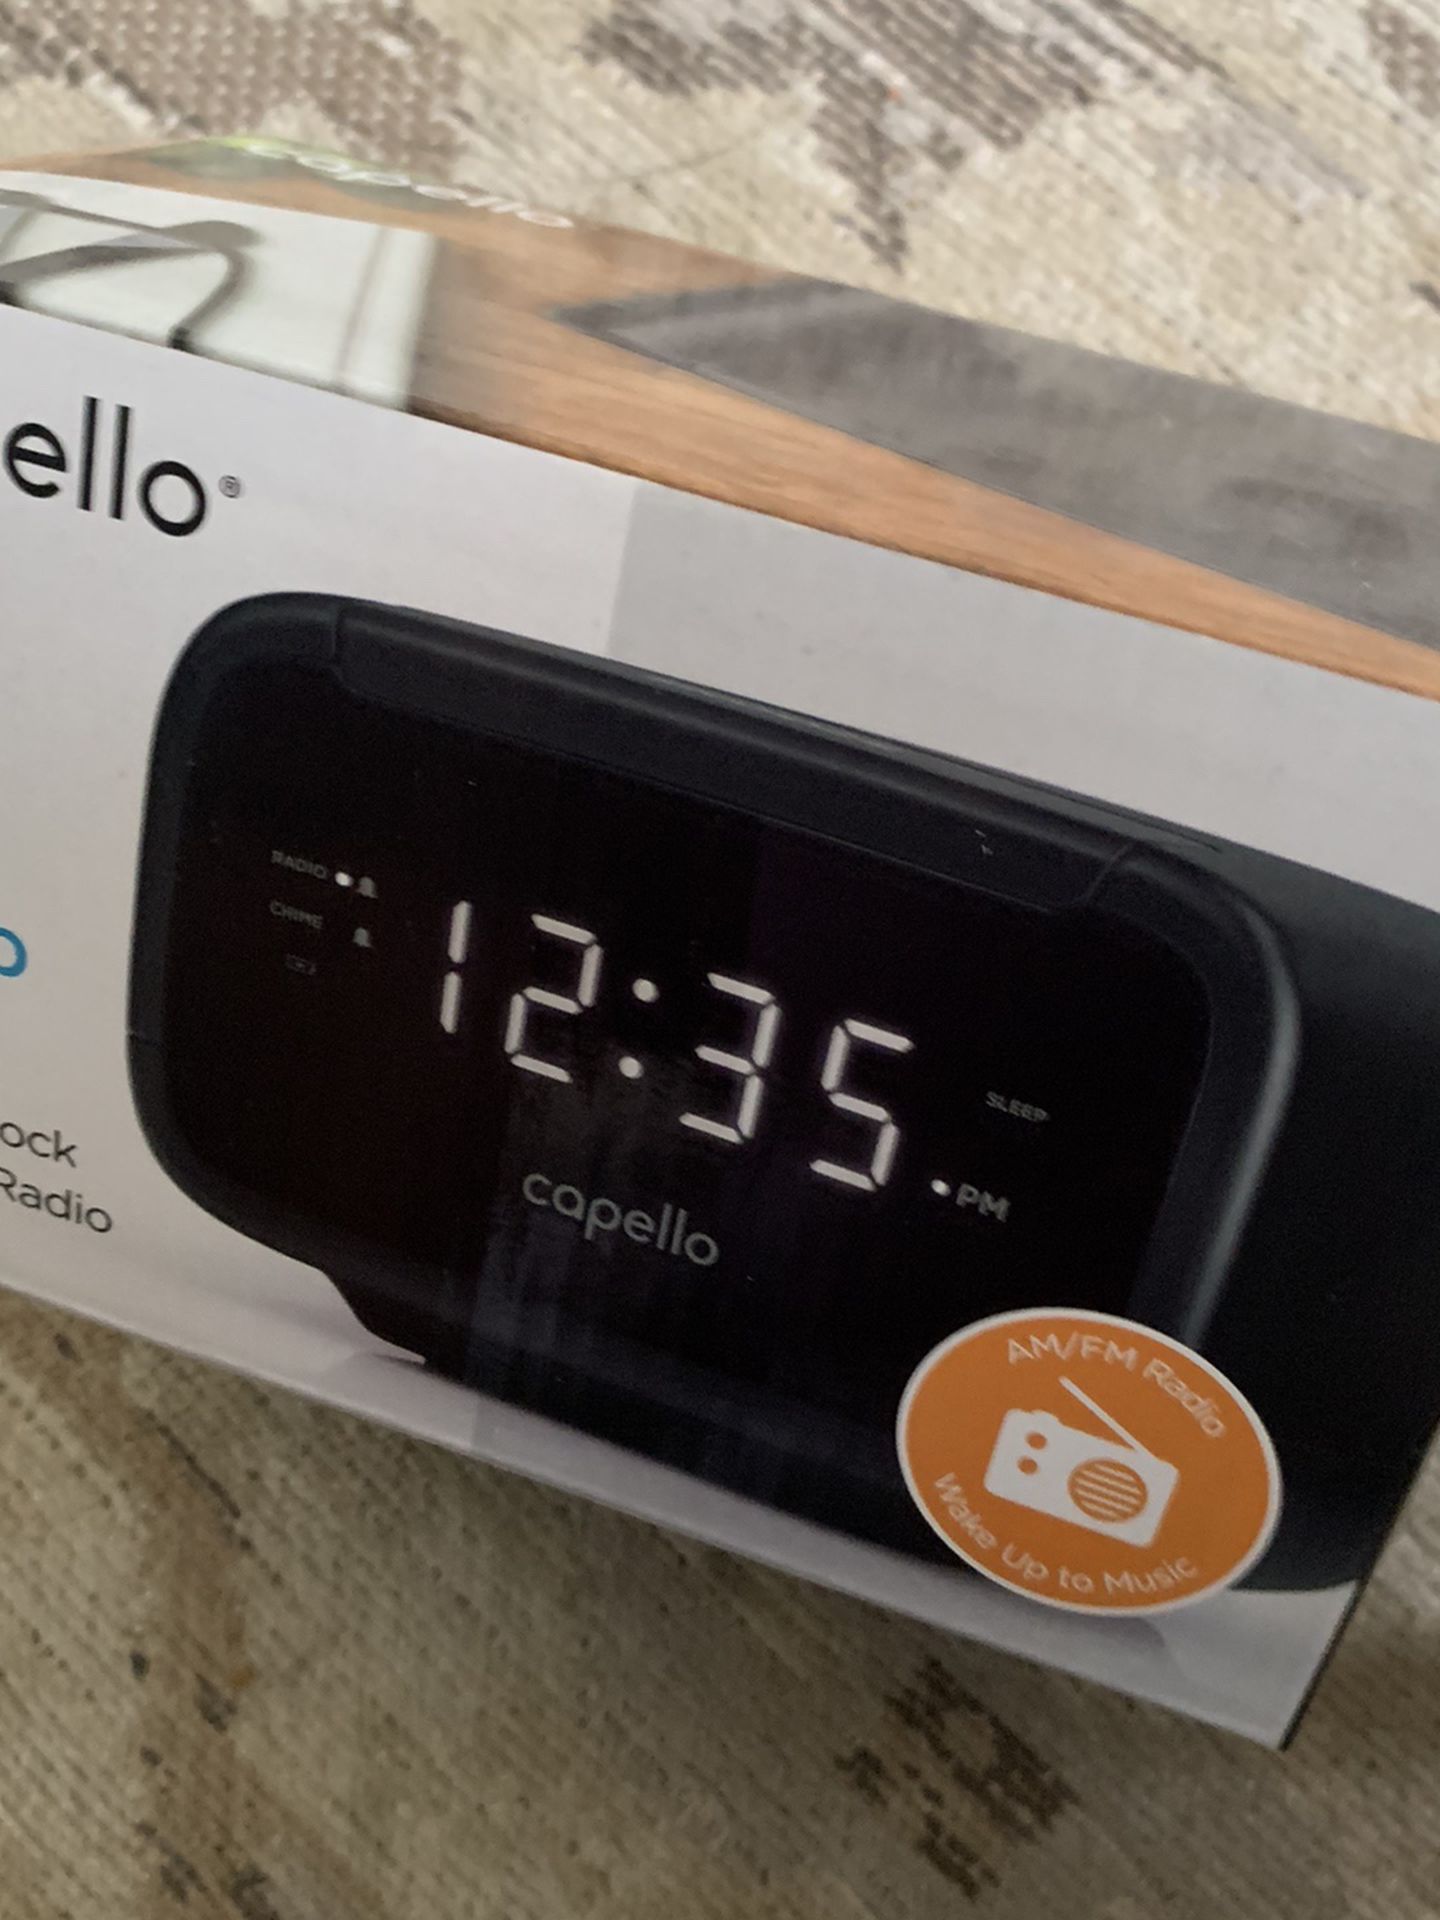 Capello Easy Sleep Alarm Clock / Radio